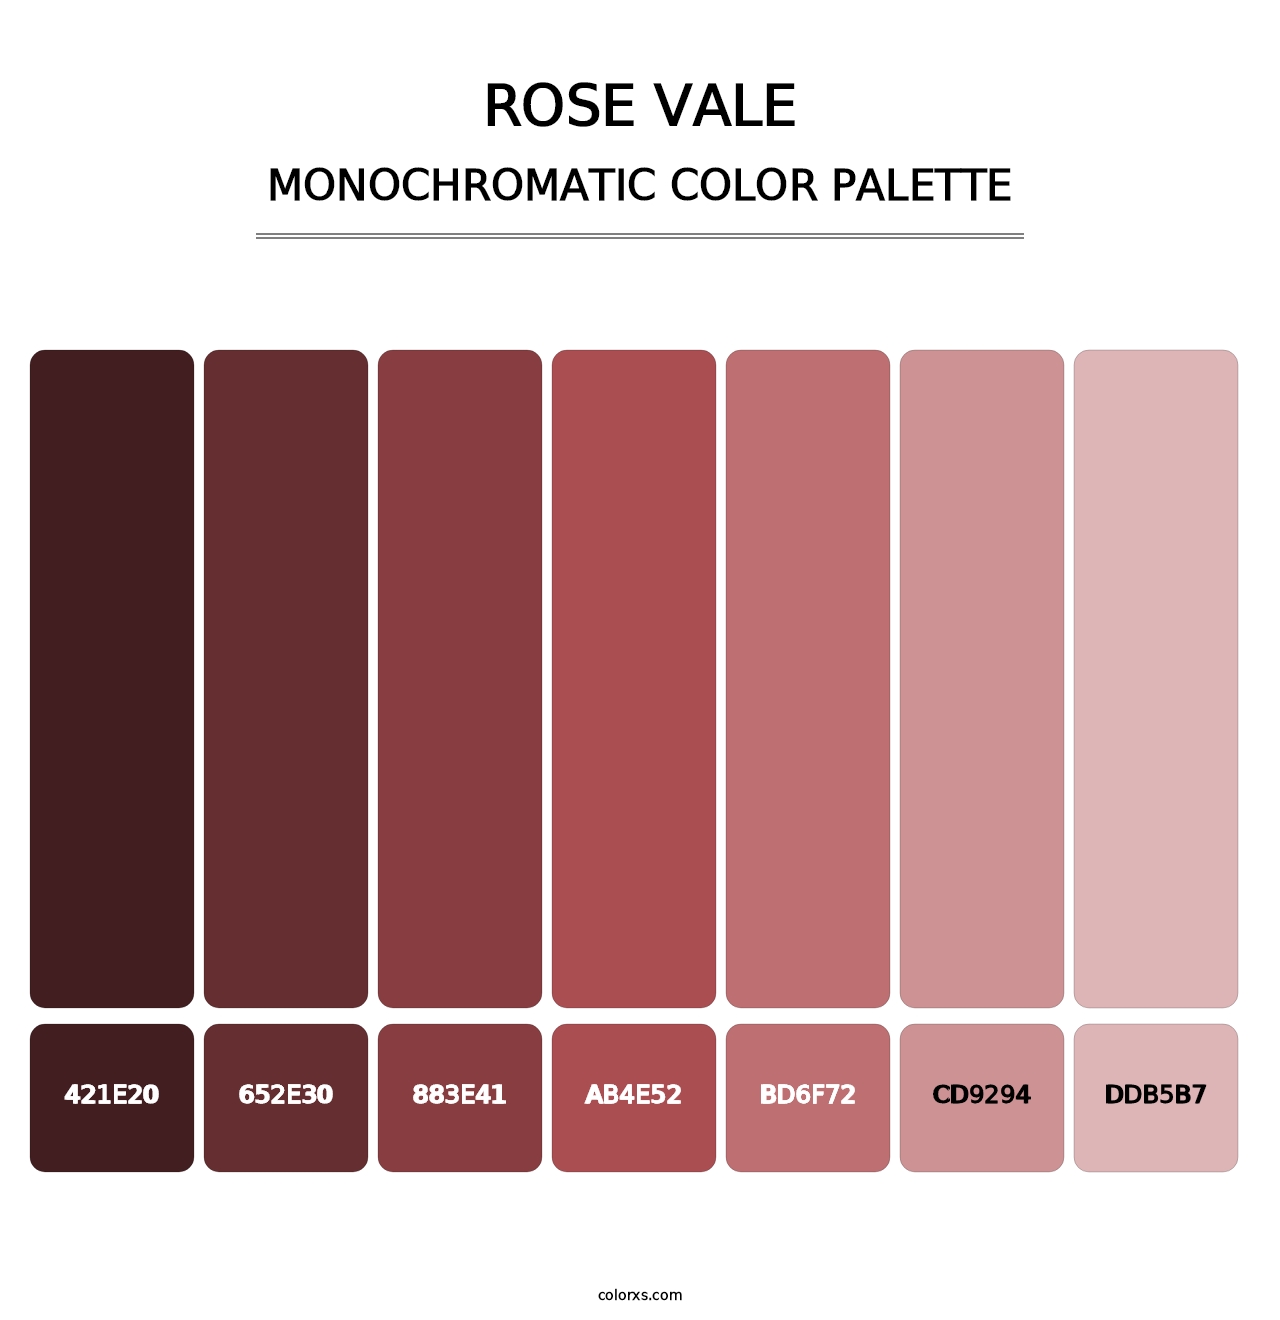 Rose Vale - Monochromatic Color Palette